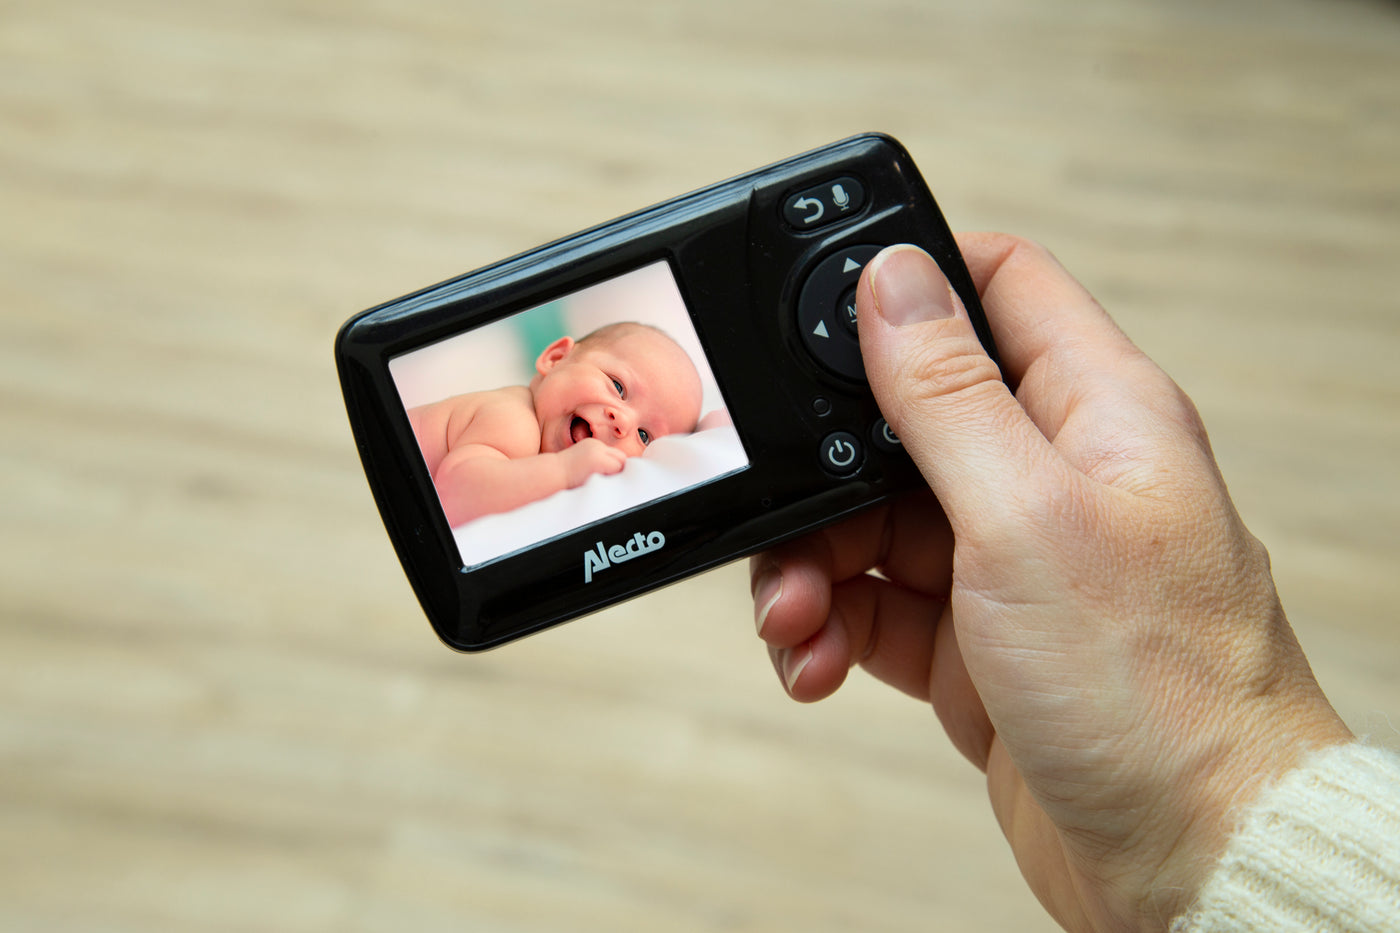 Alecto DVM71BK - Babyphone mit Kamera und 2.4"-Farbdisplay, Schwarz